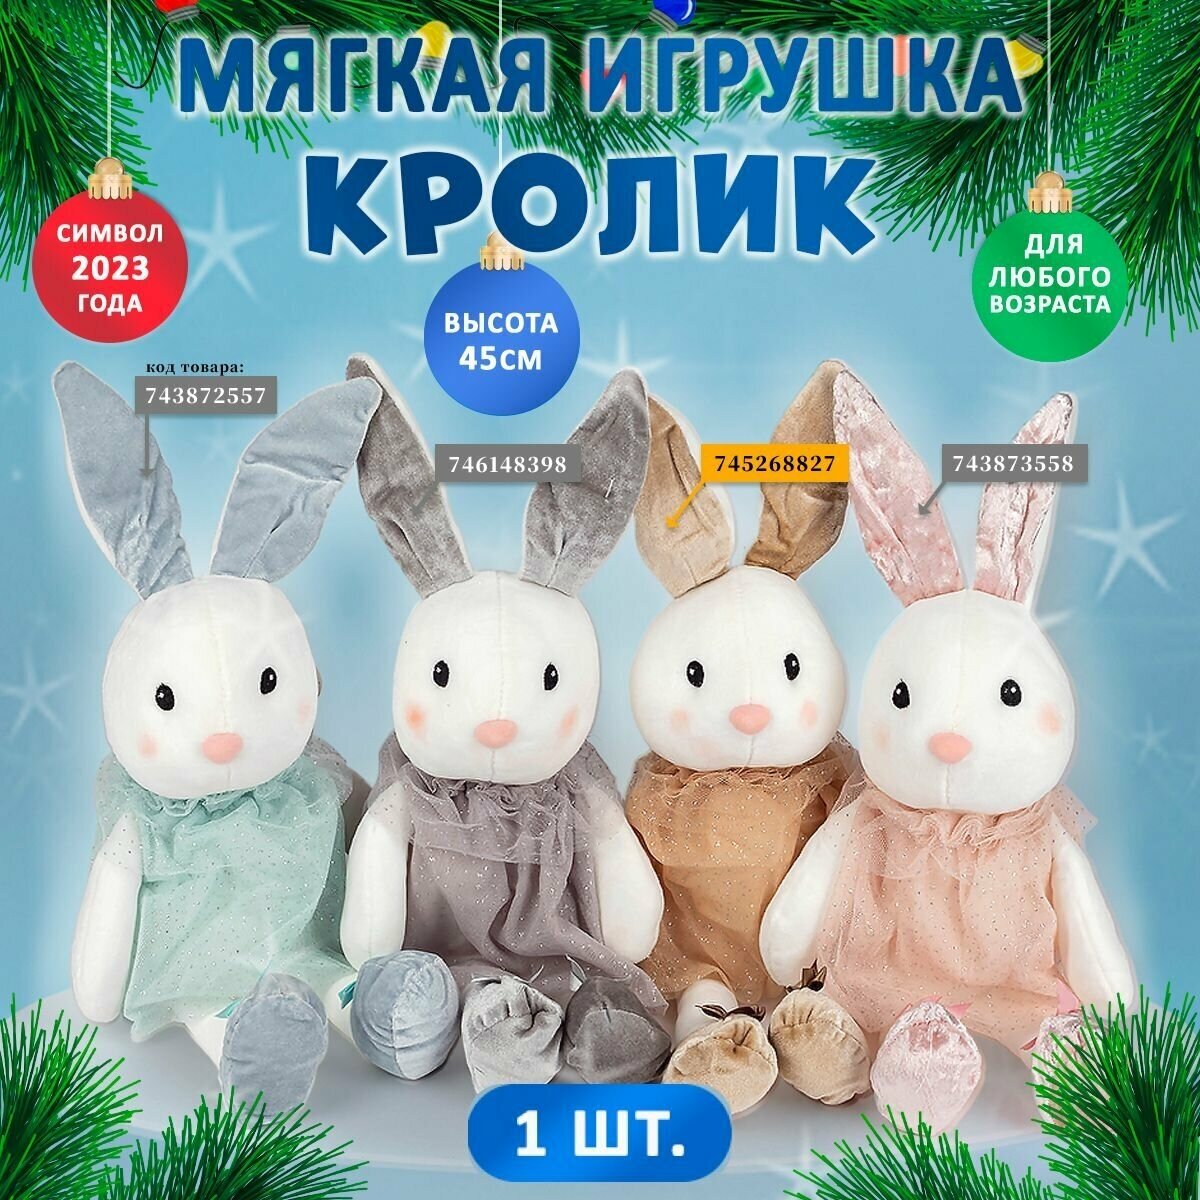 Мягкая игрушка КроликСимвол года 2023, подарок на новый год детям, украшения декор, сувениры, товары для праздника, подарки взрослым